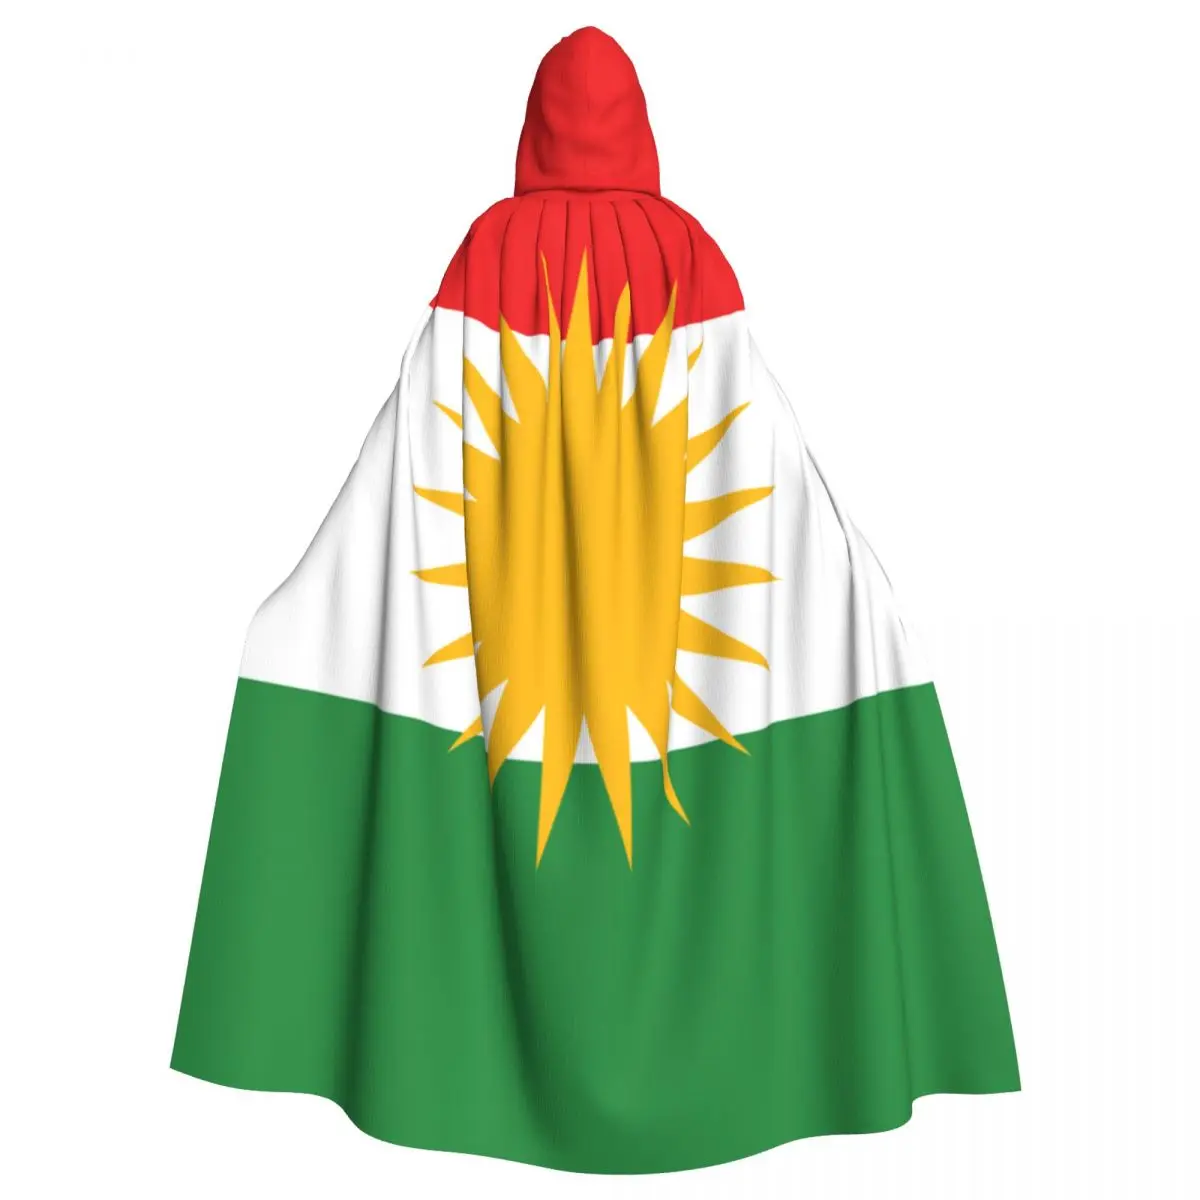 

Унисекс, взрослый флаг Курдистана, плащ с капюшоном, длинный костюм ведьмы, косплей